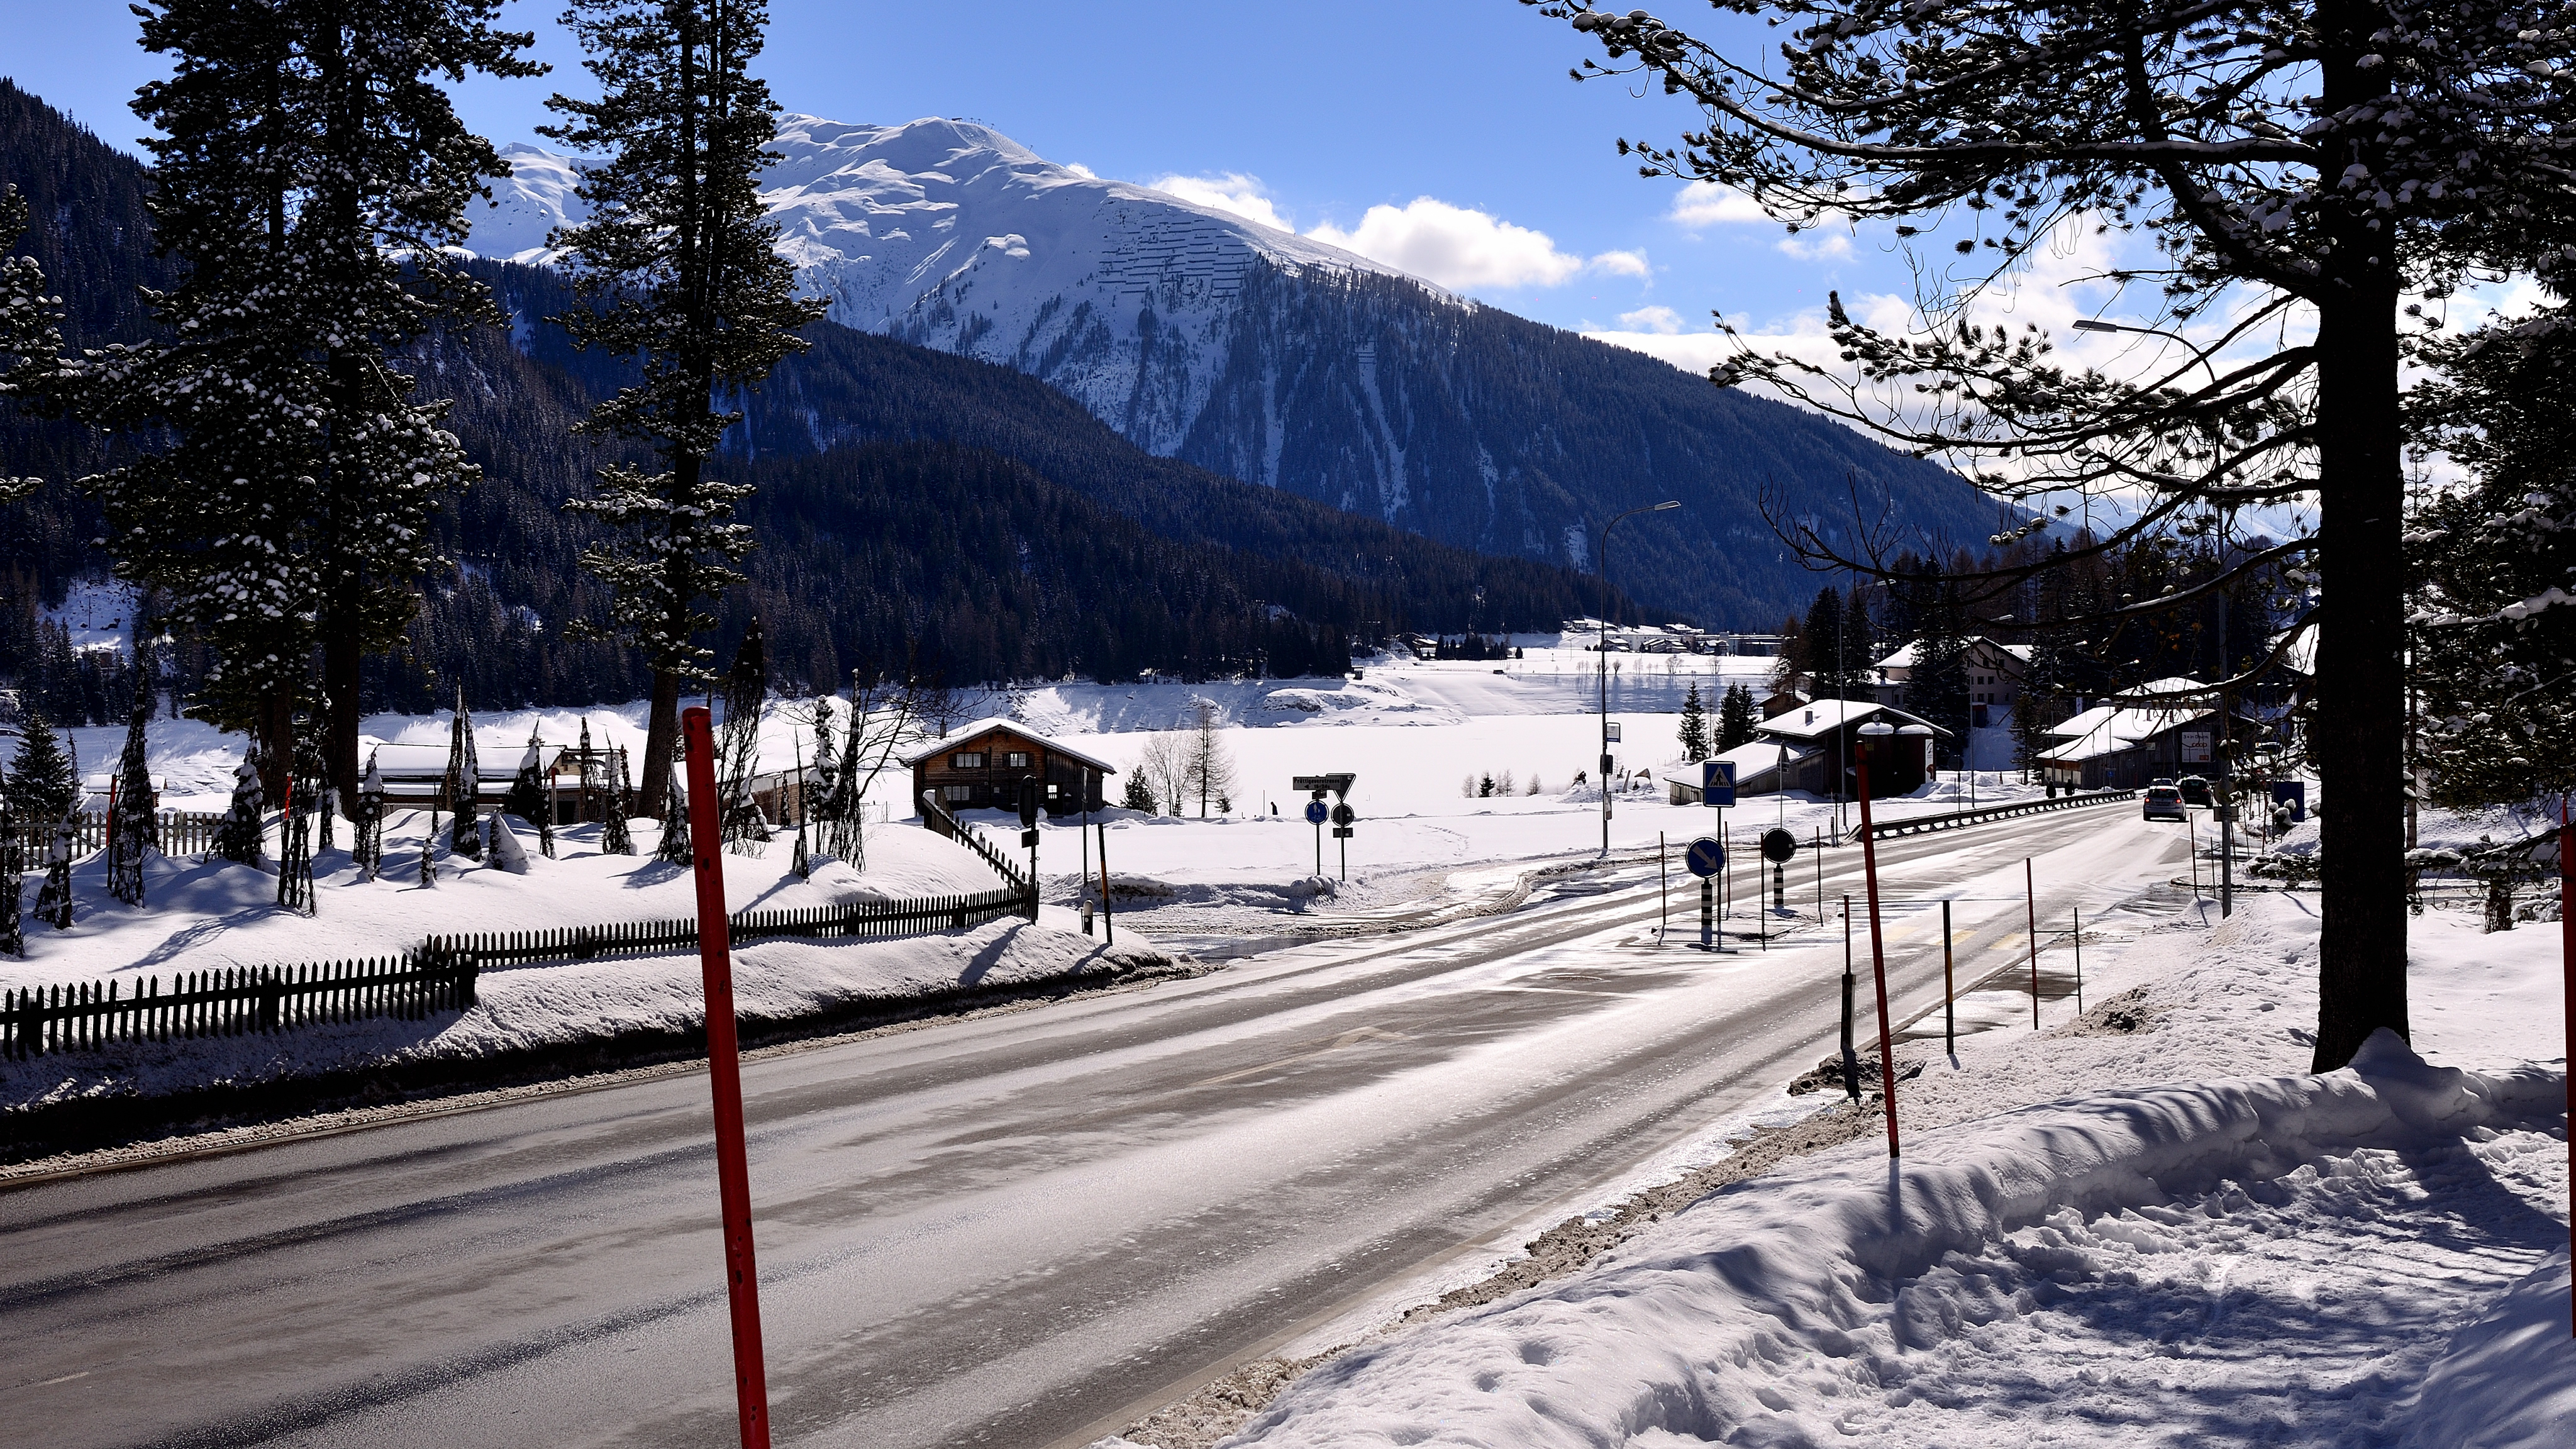 Rundfahrt durch Davos bei Sonnenschein - März 2015 - Roadtrip